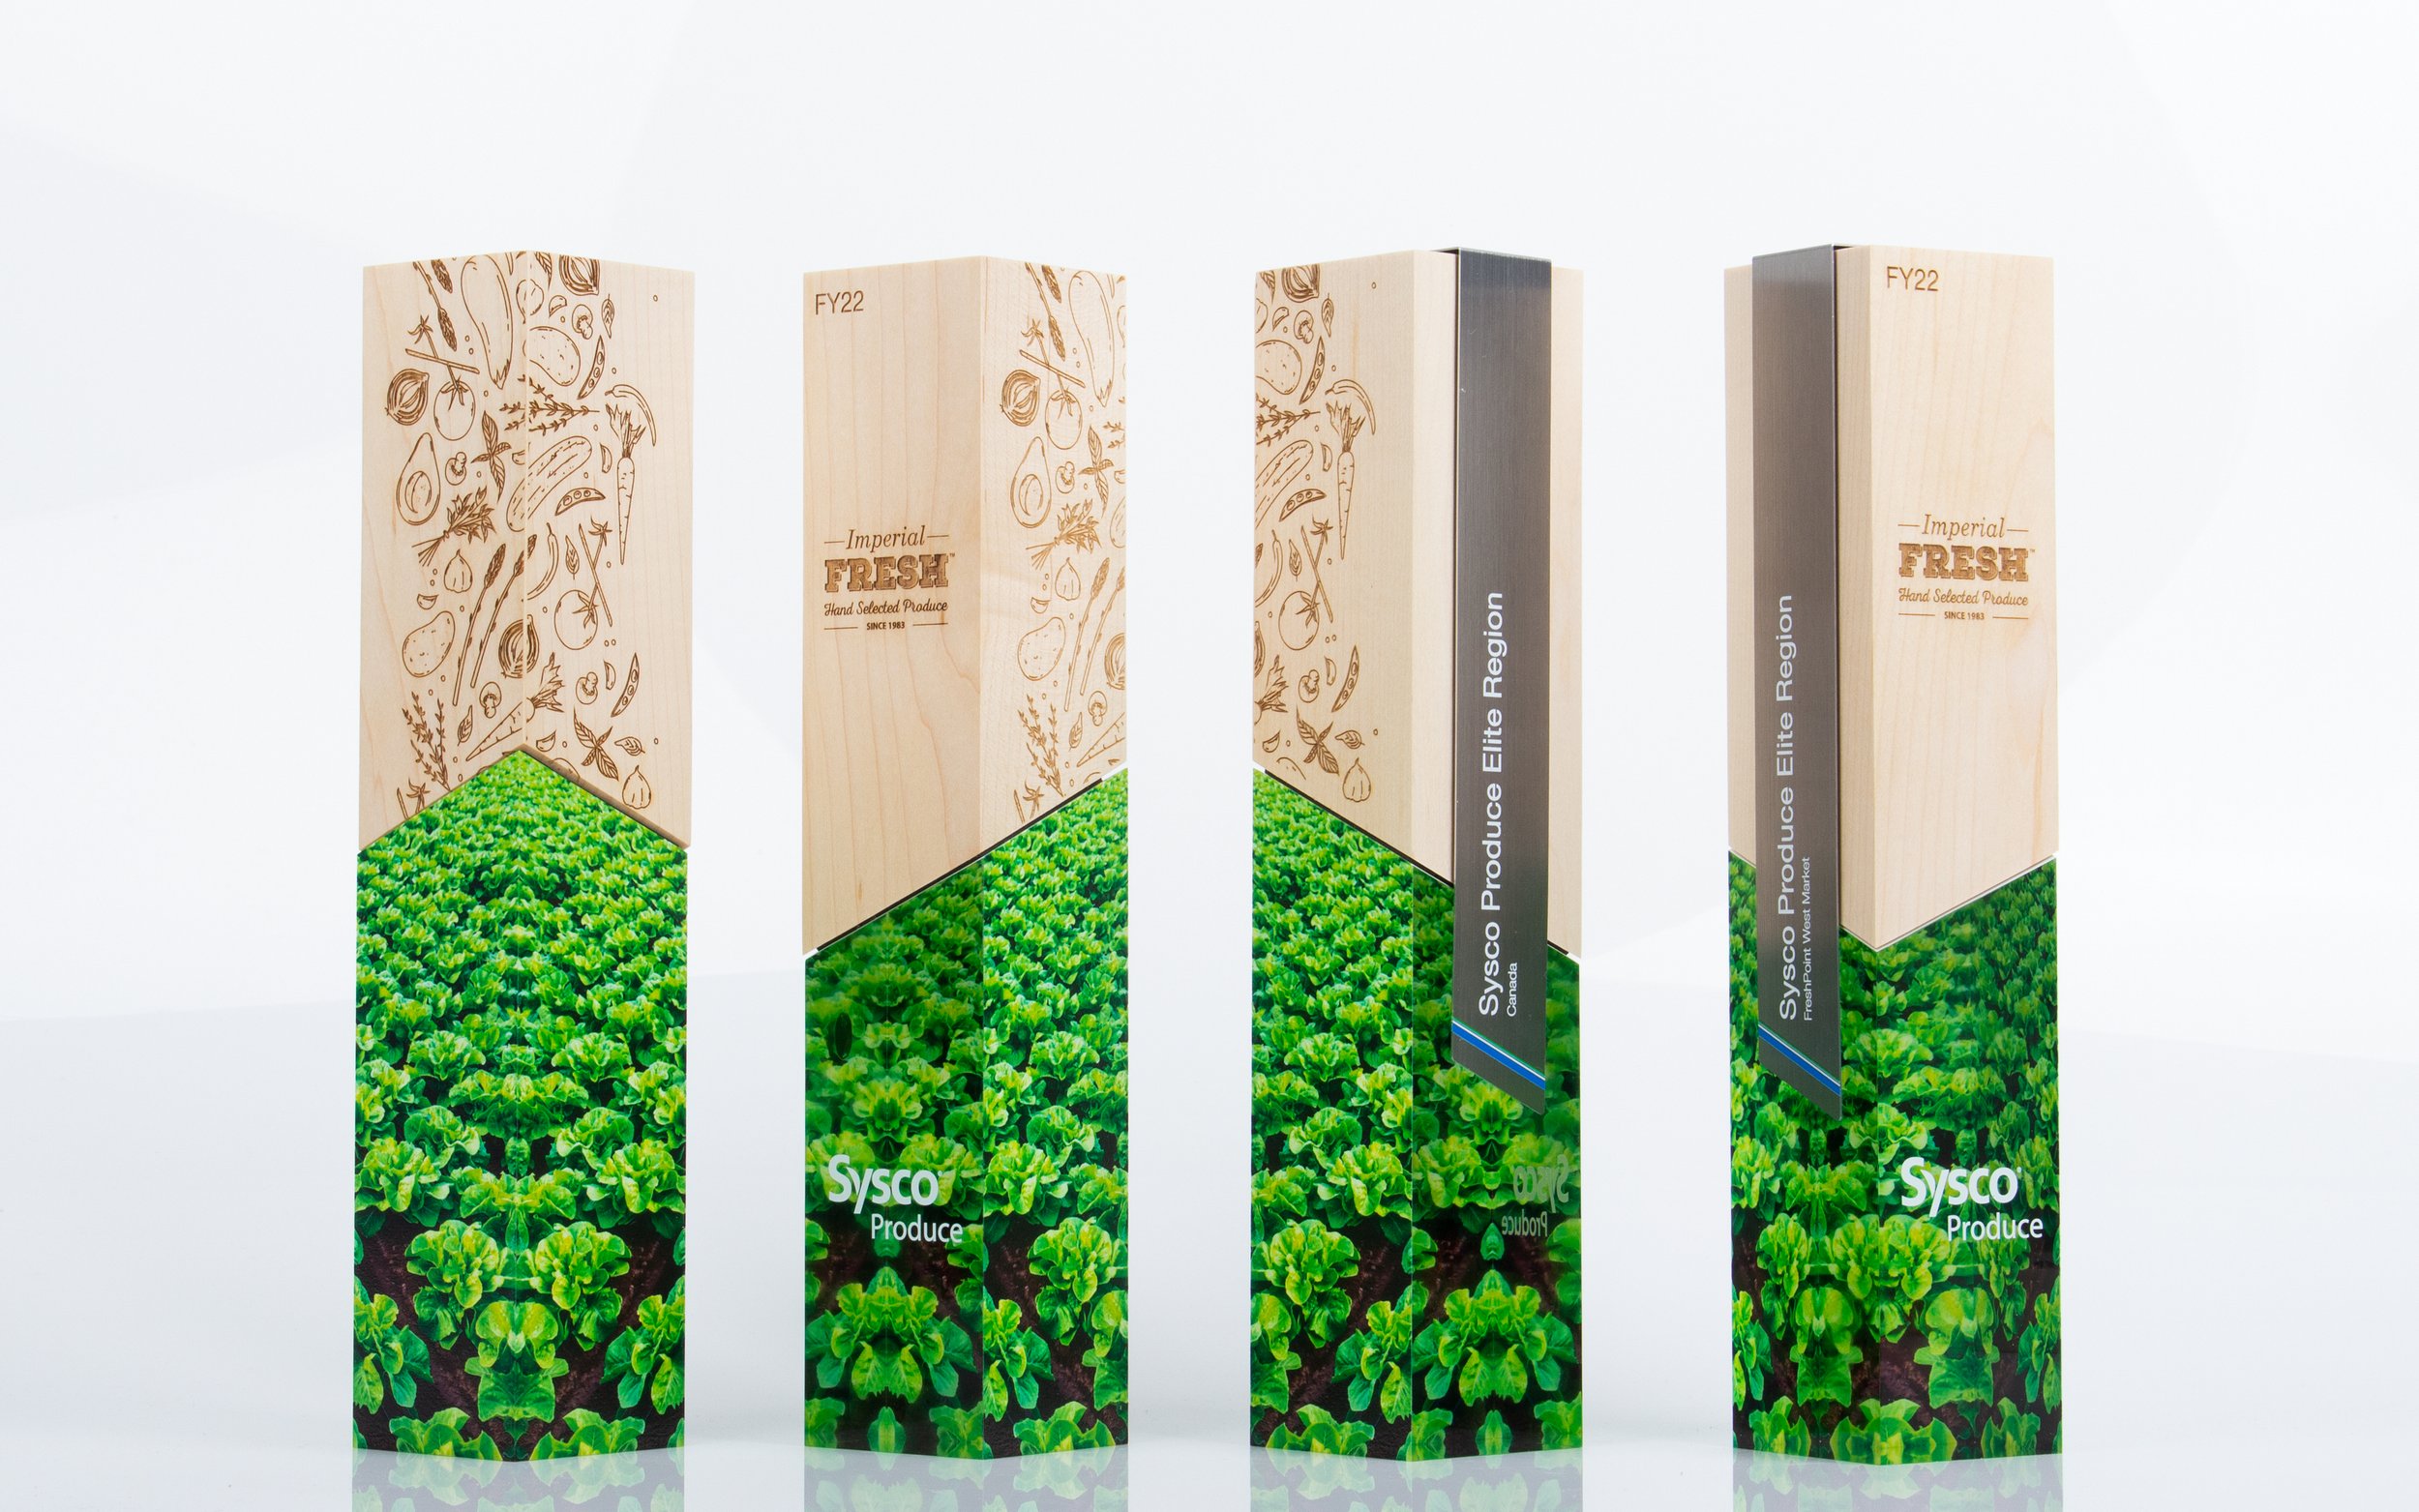 sysco produce awards half wood half acrylic